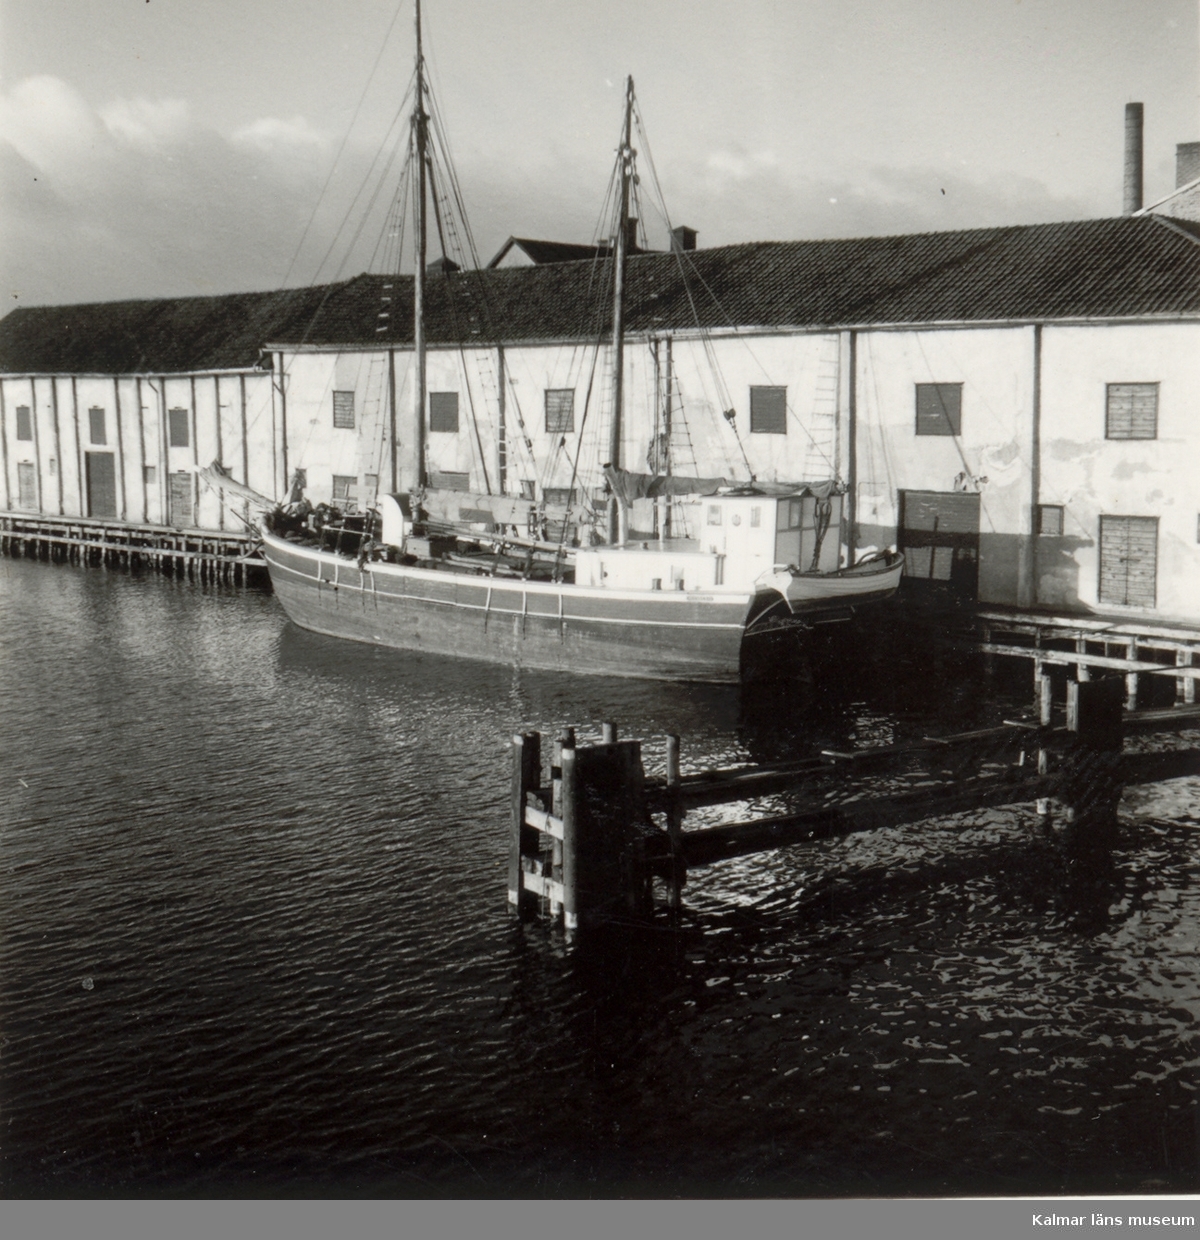 Galeasen Norden av Kalmar.

Kalmar november 1955.